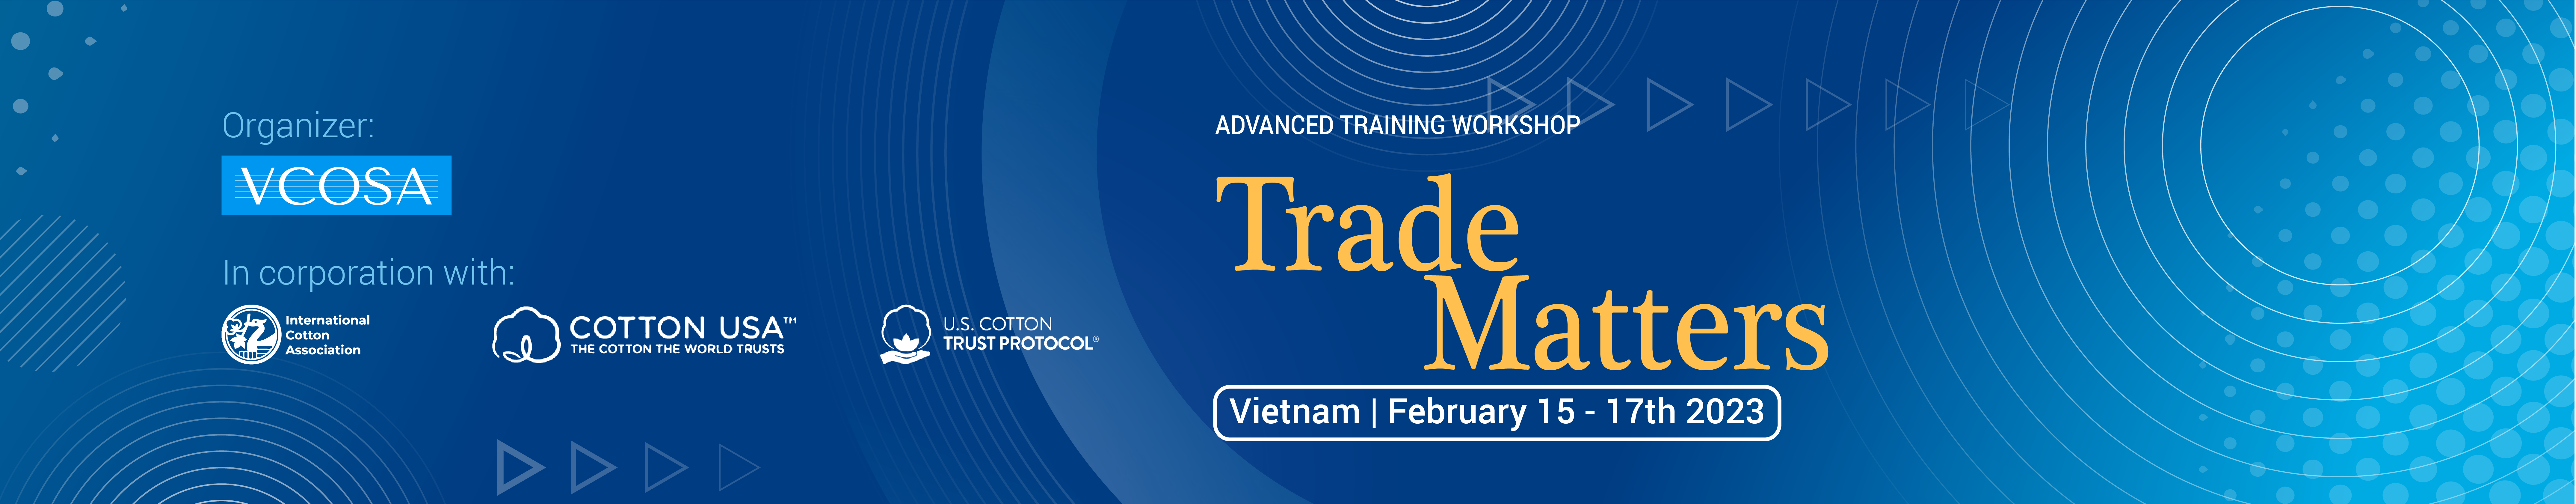 Trade matters workshop